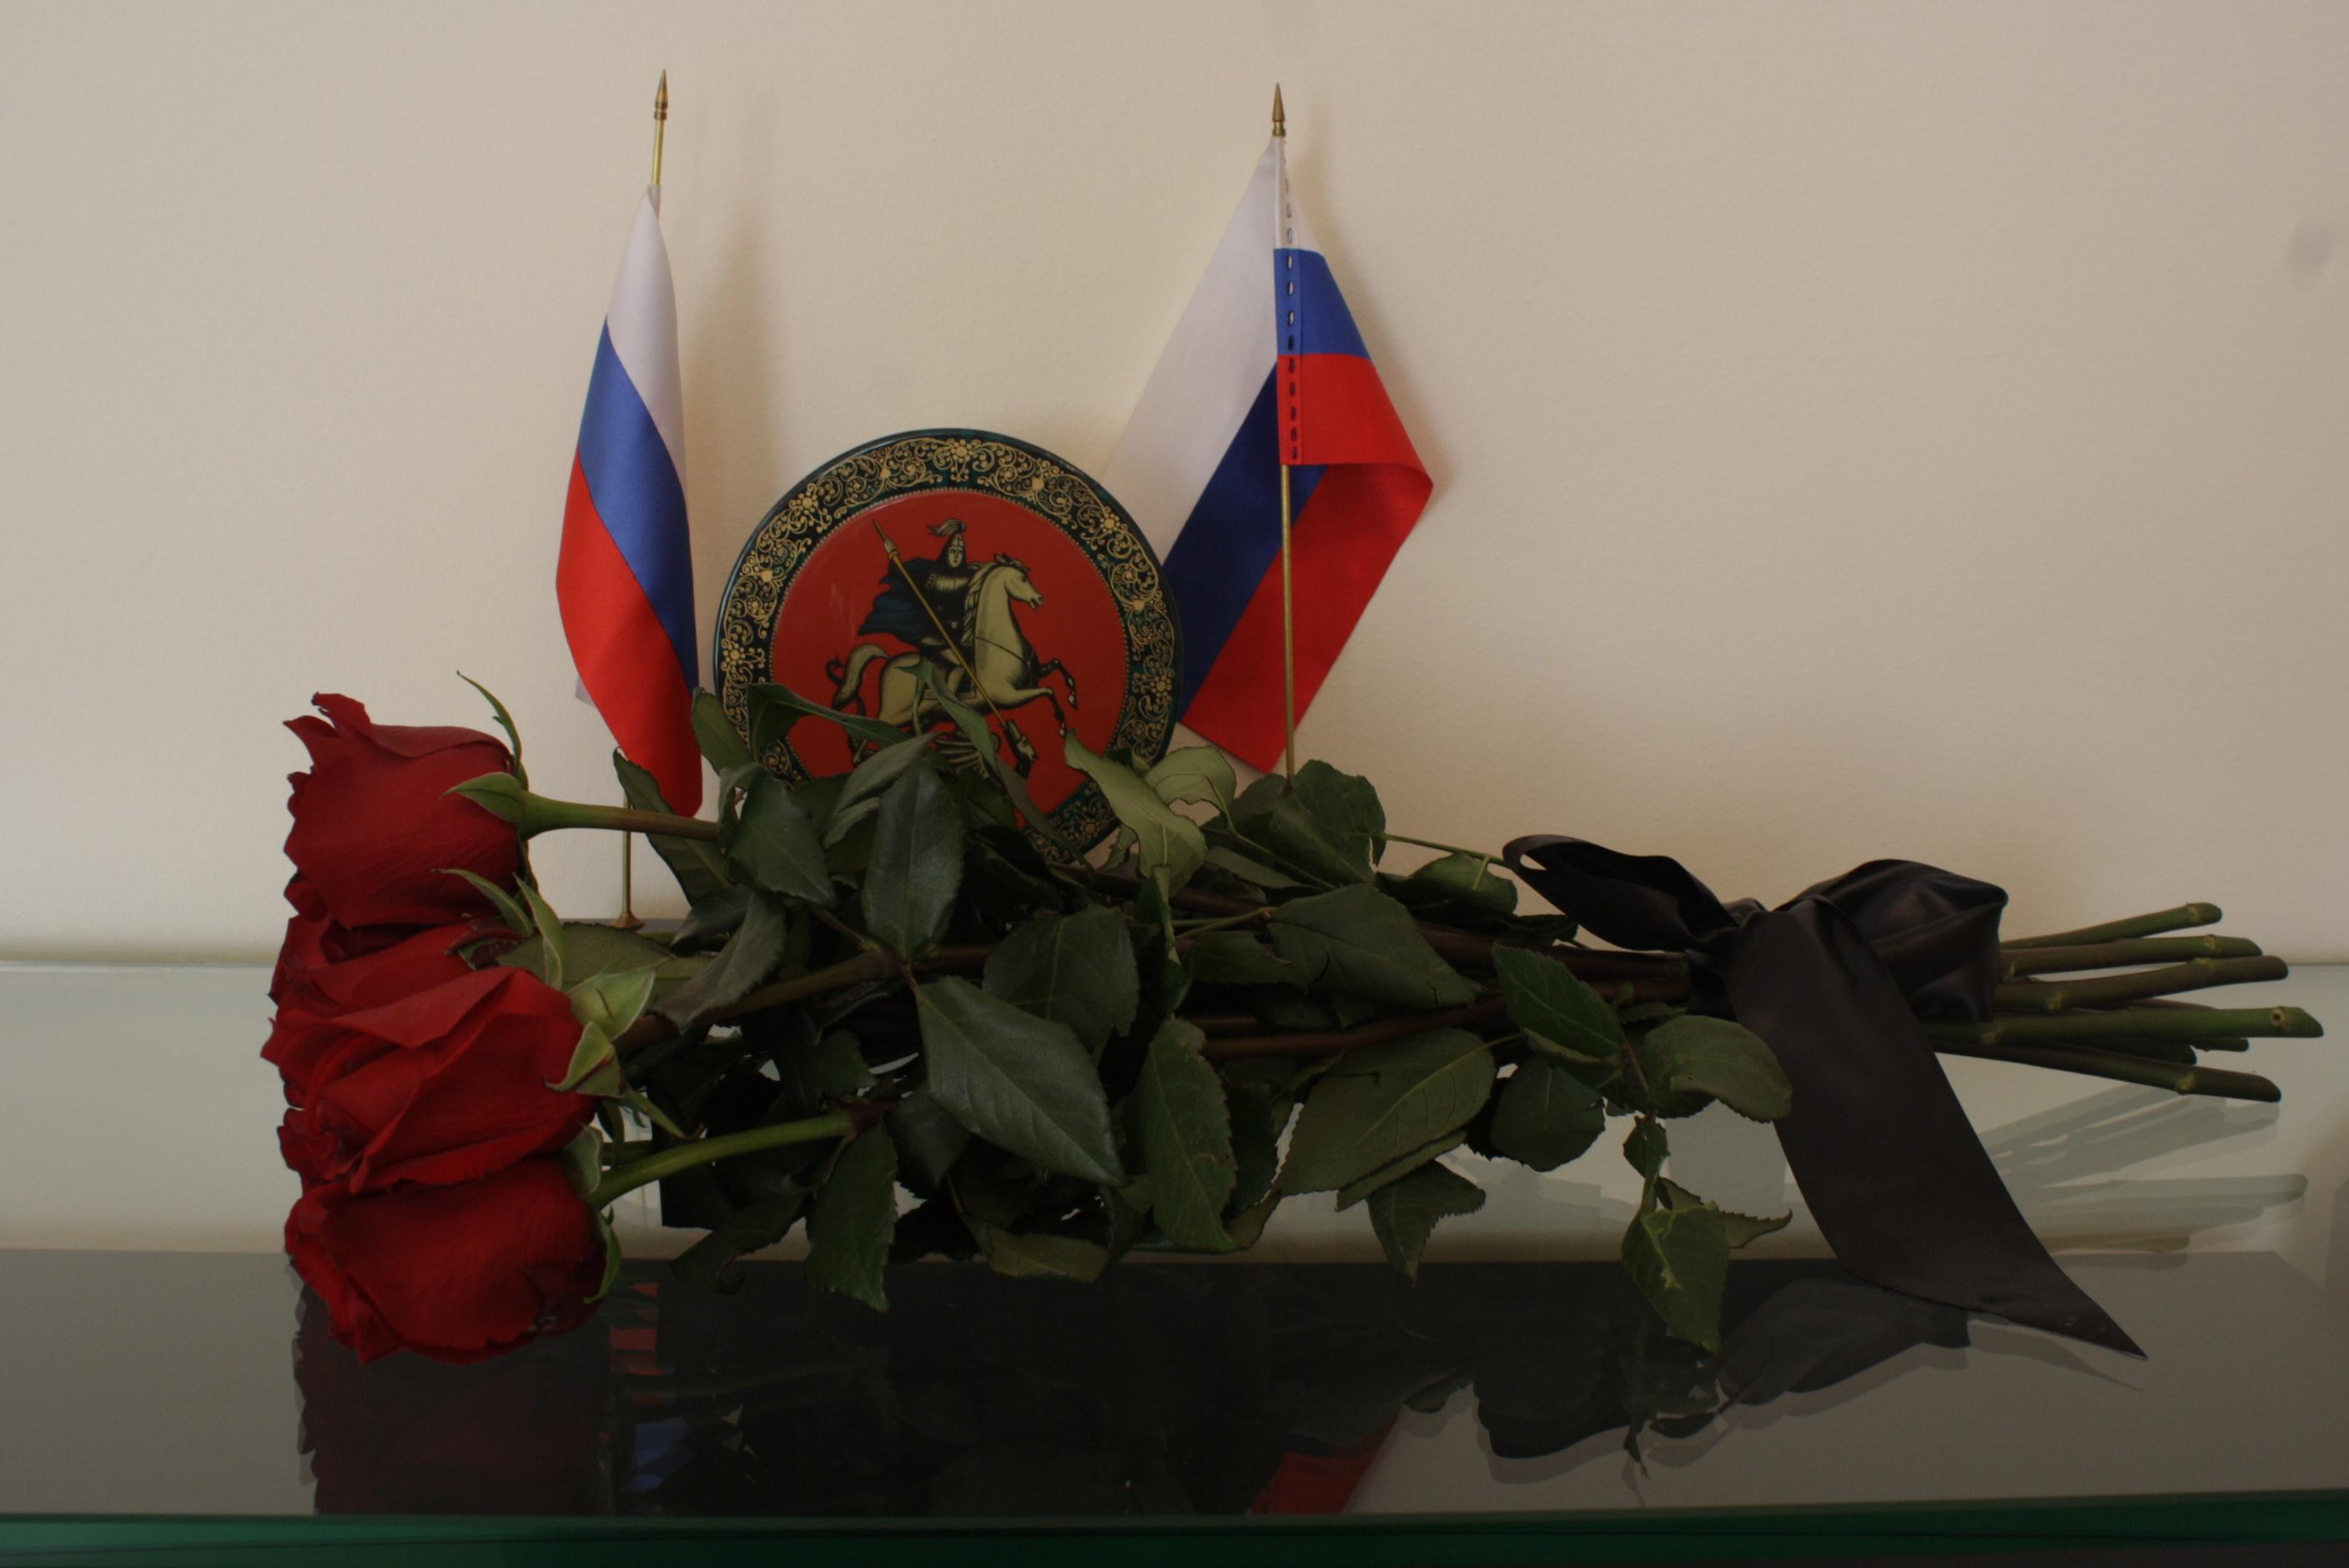 Траурный флаг россии фото